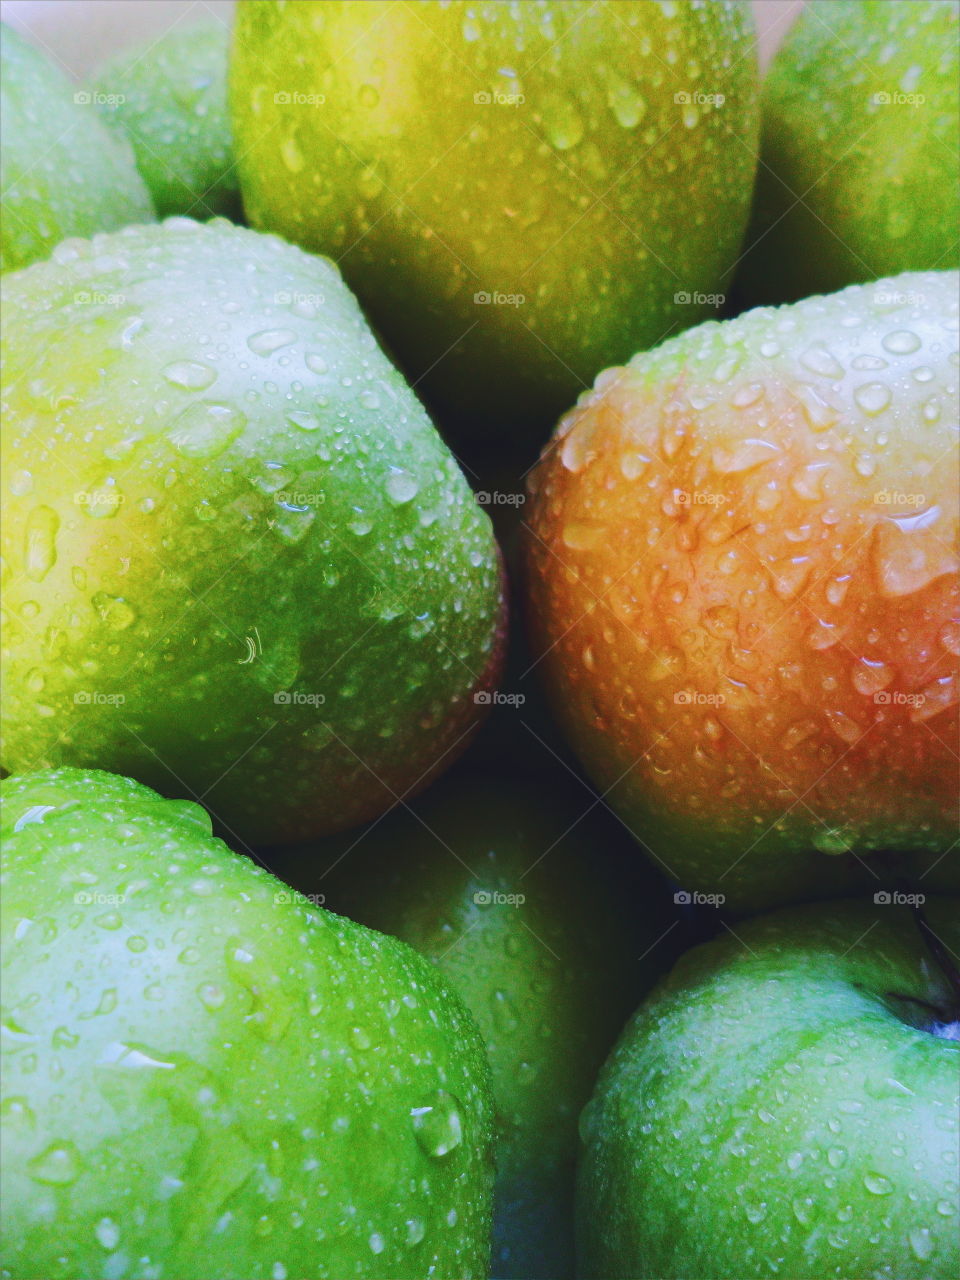 drops of water on green apple varieties of simirenko